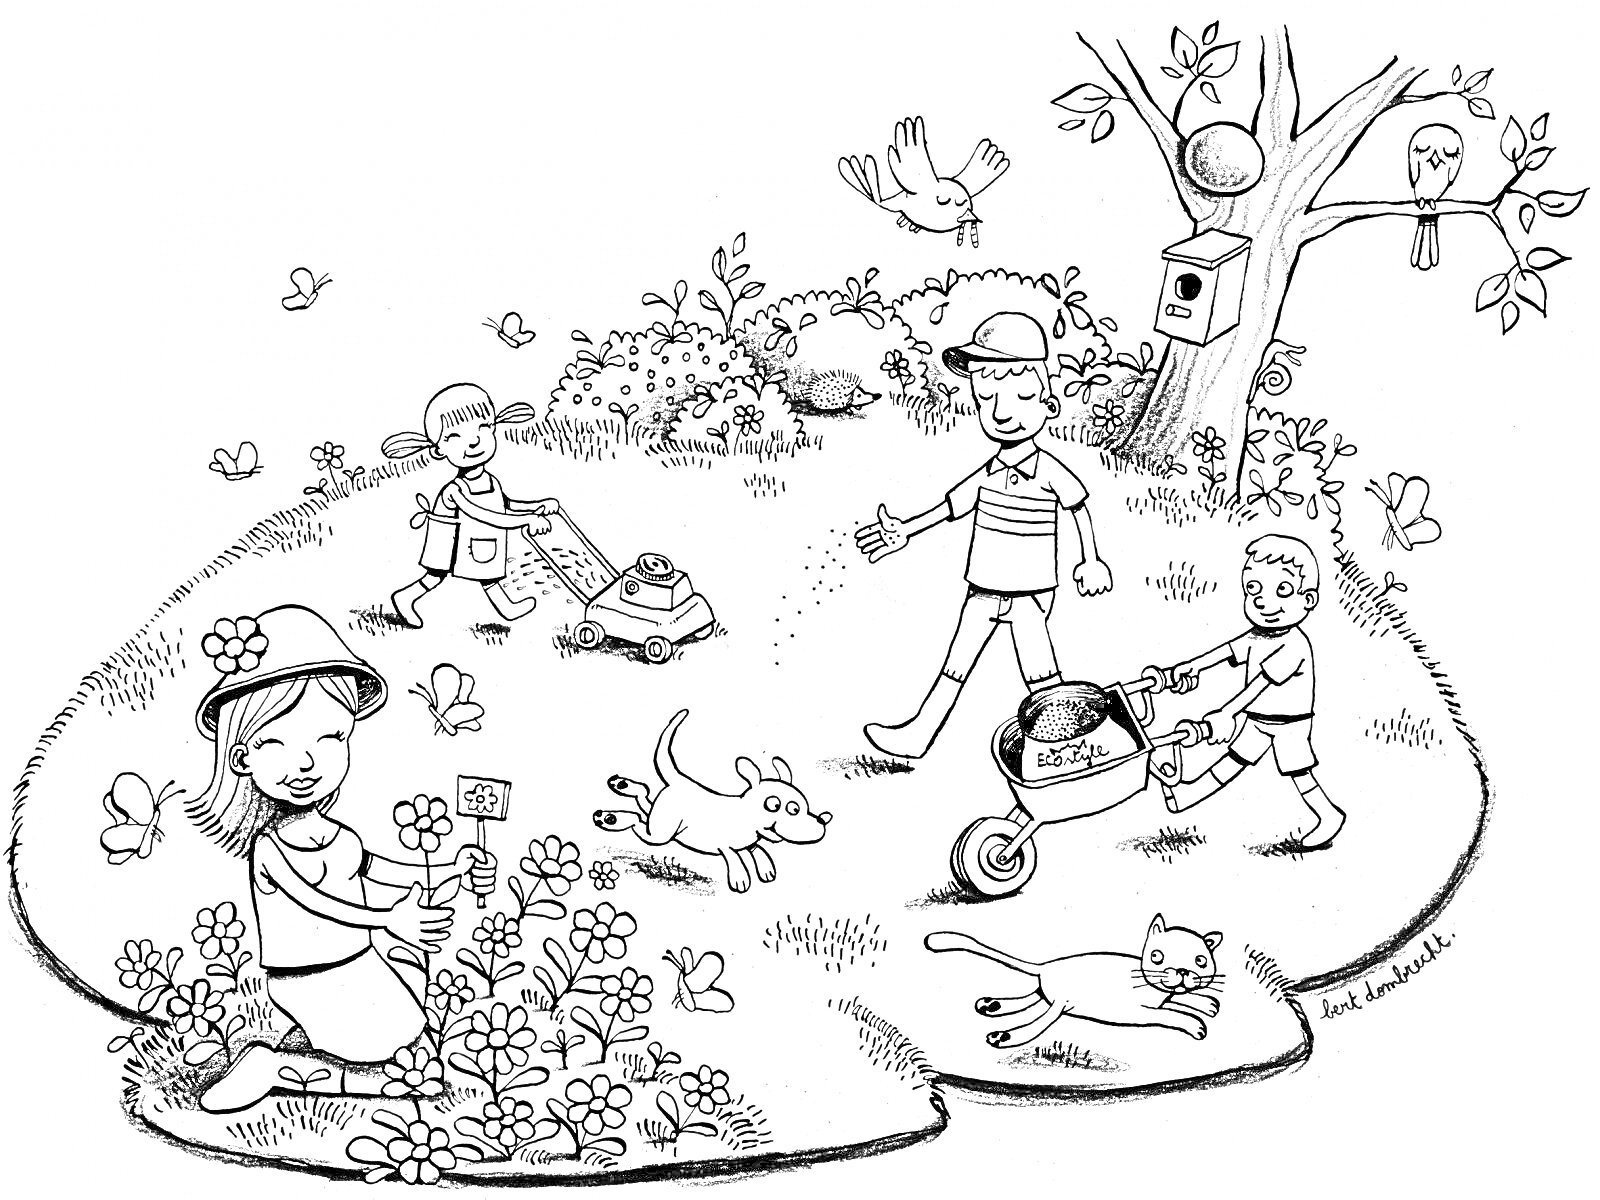 Раскраска Садовая сцена с детьми, взрослыми, животными и растениями